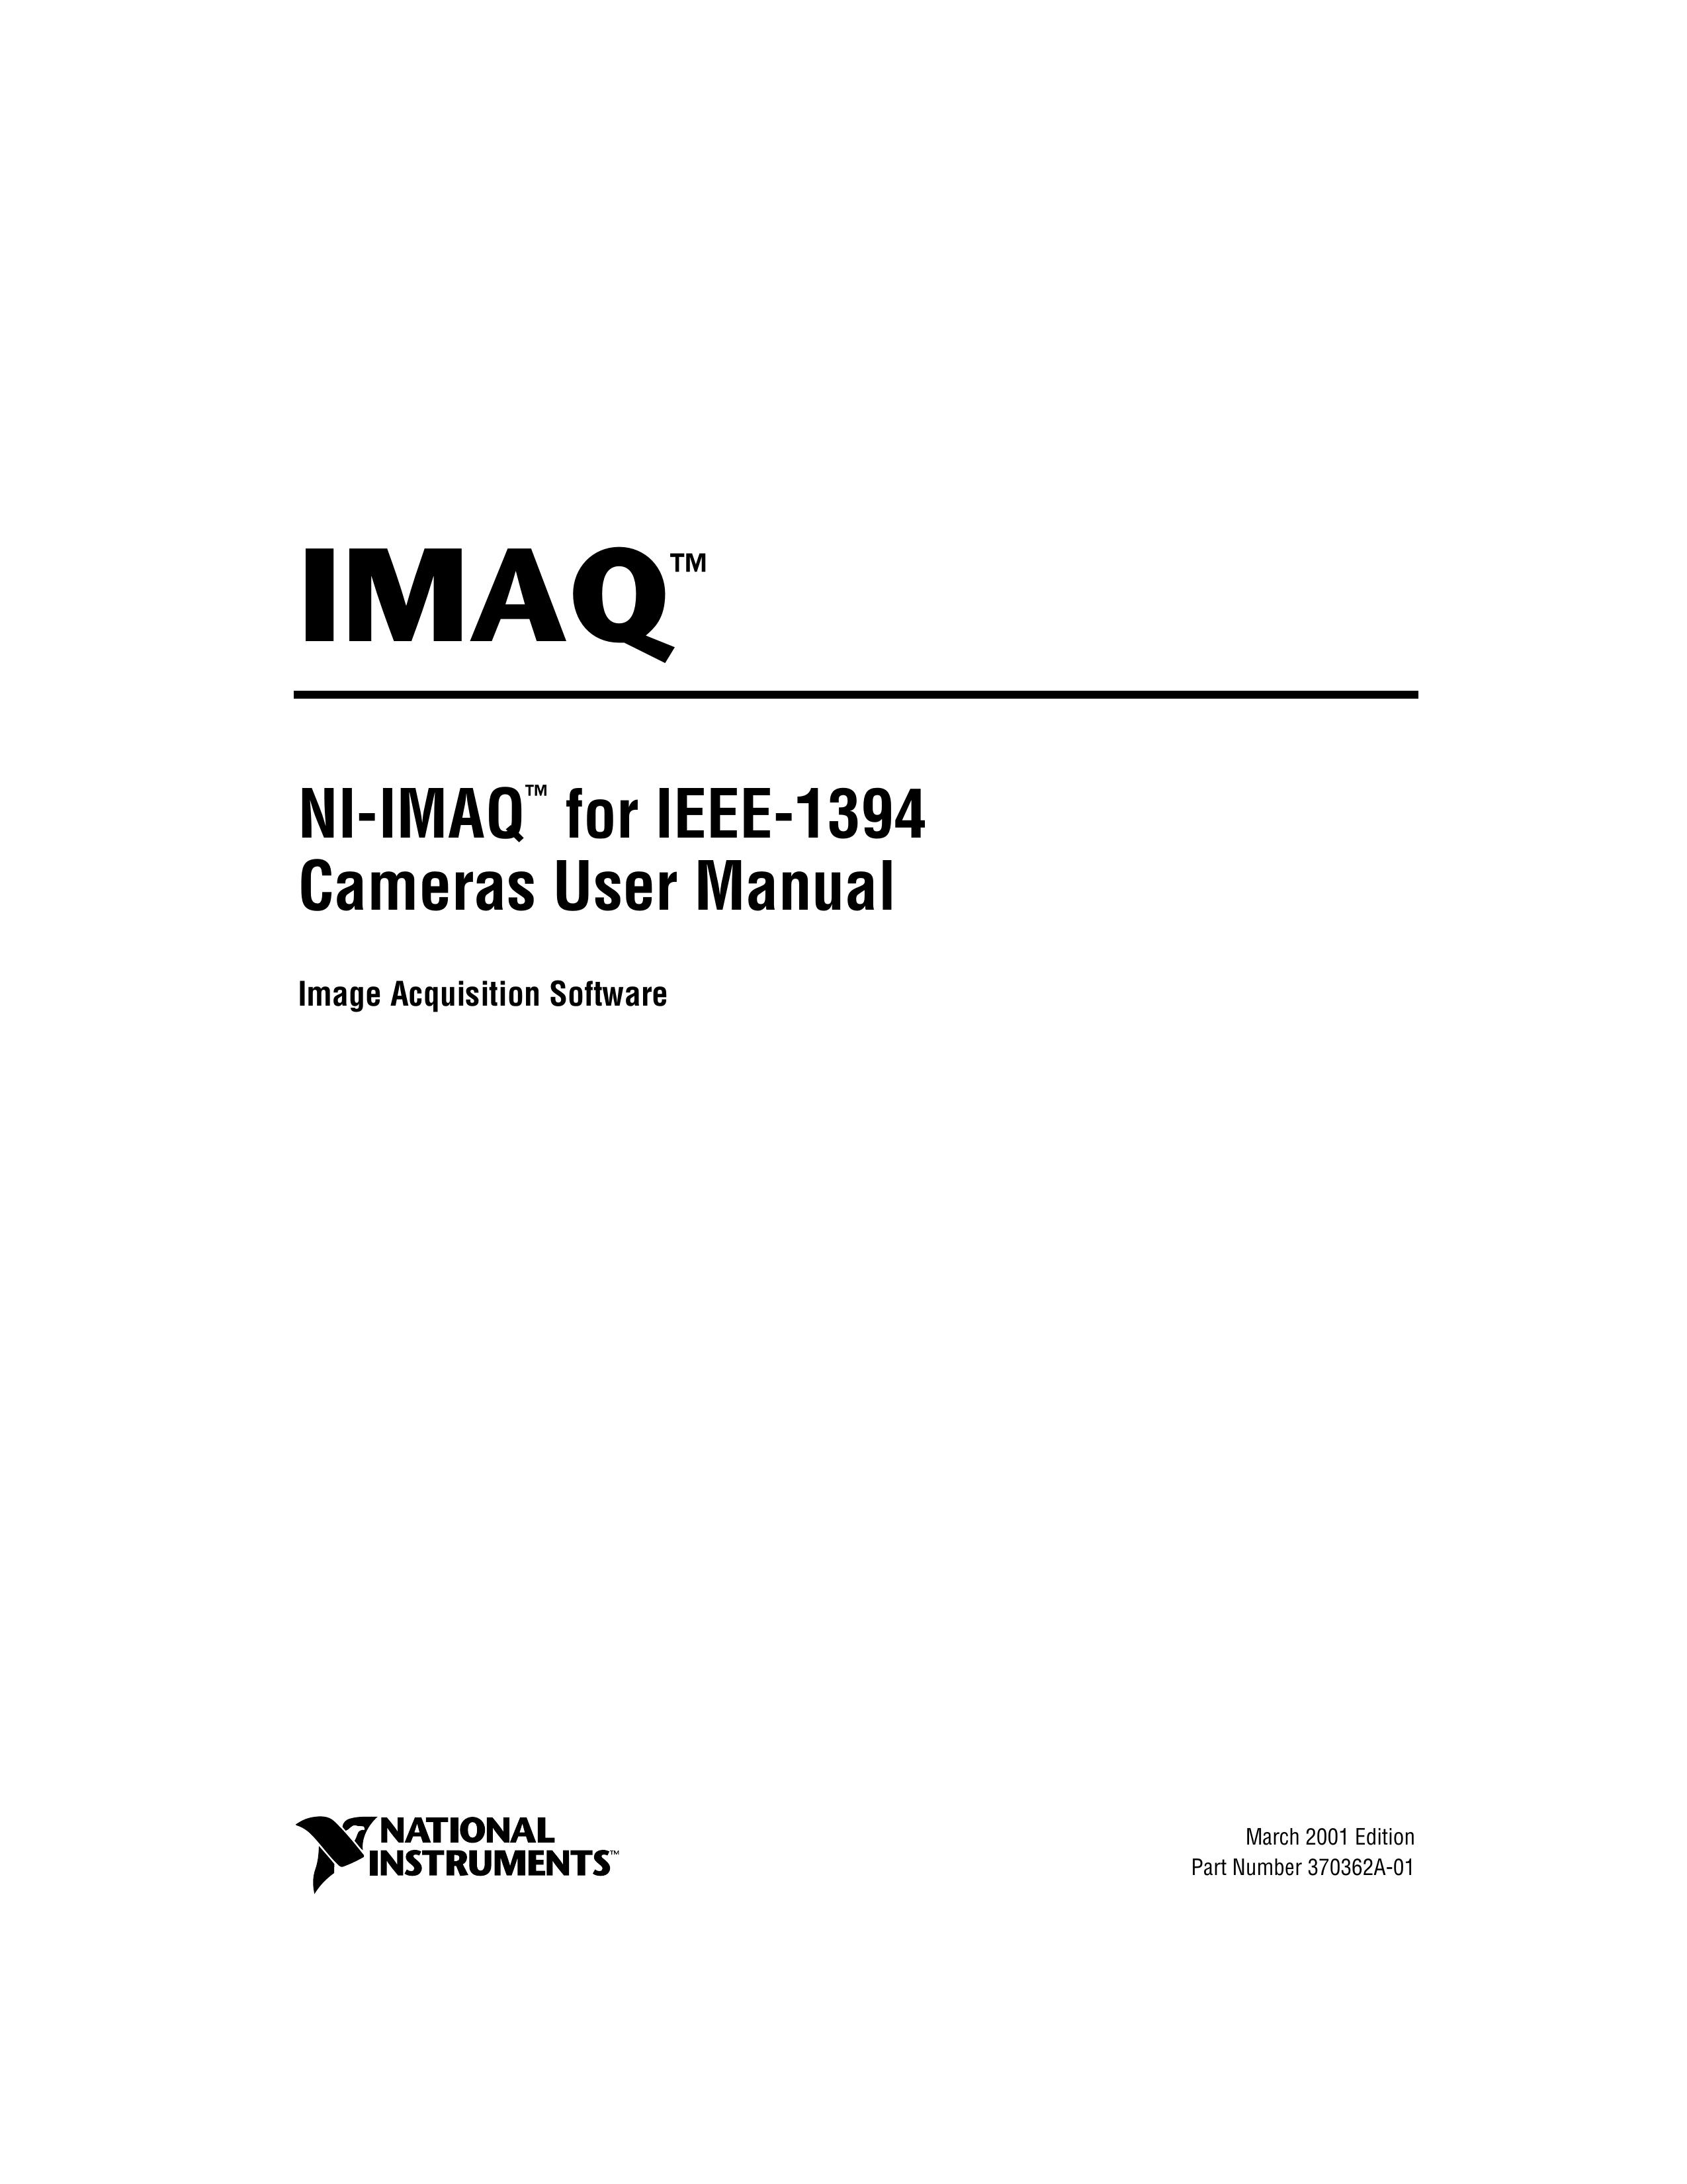 National Instruments NI-IMAQ Digital Camera User Manual